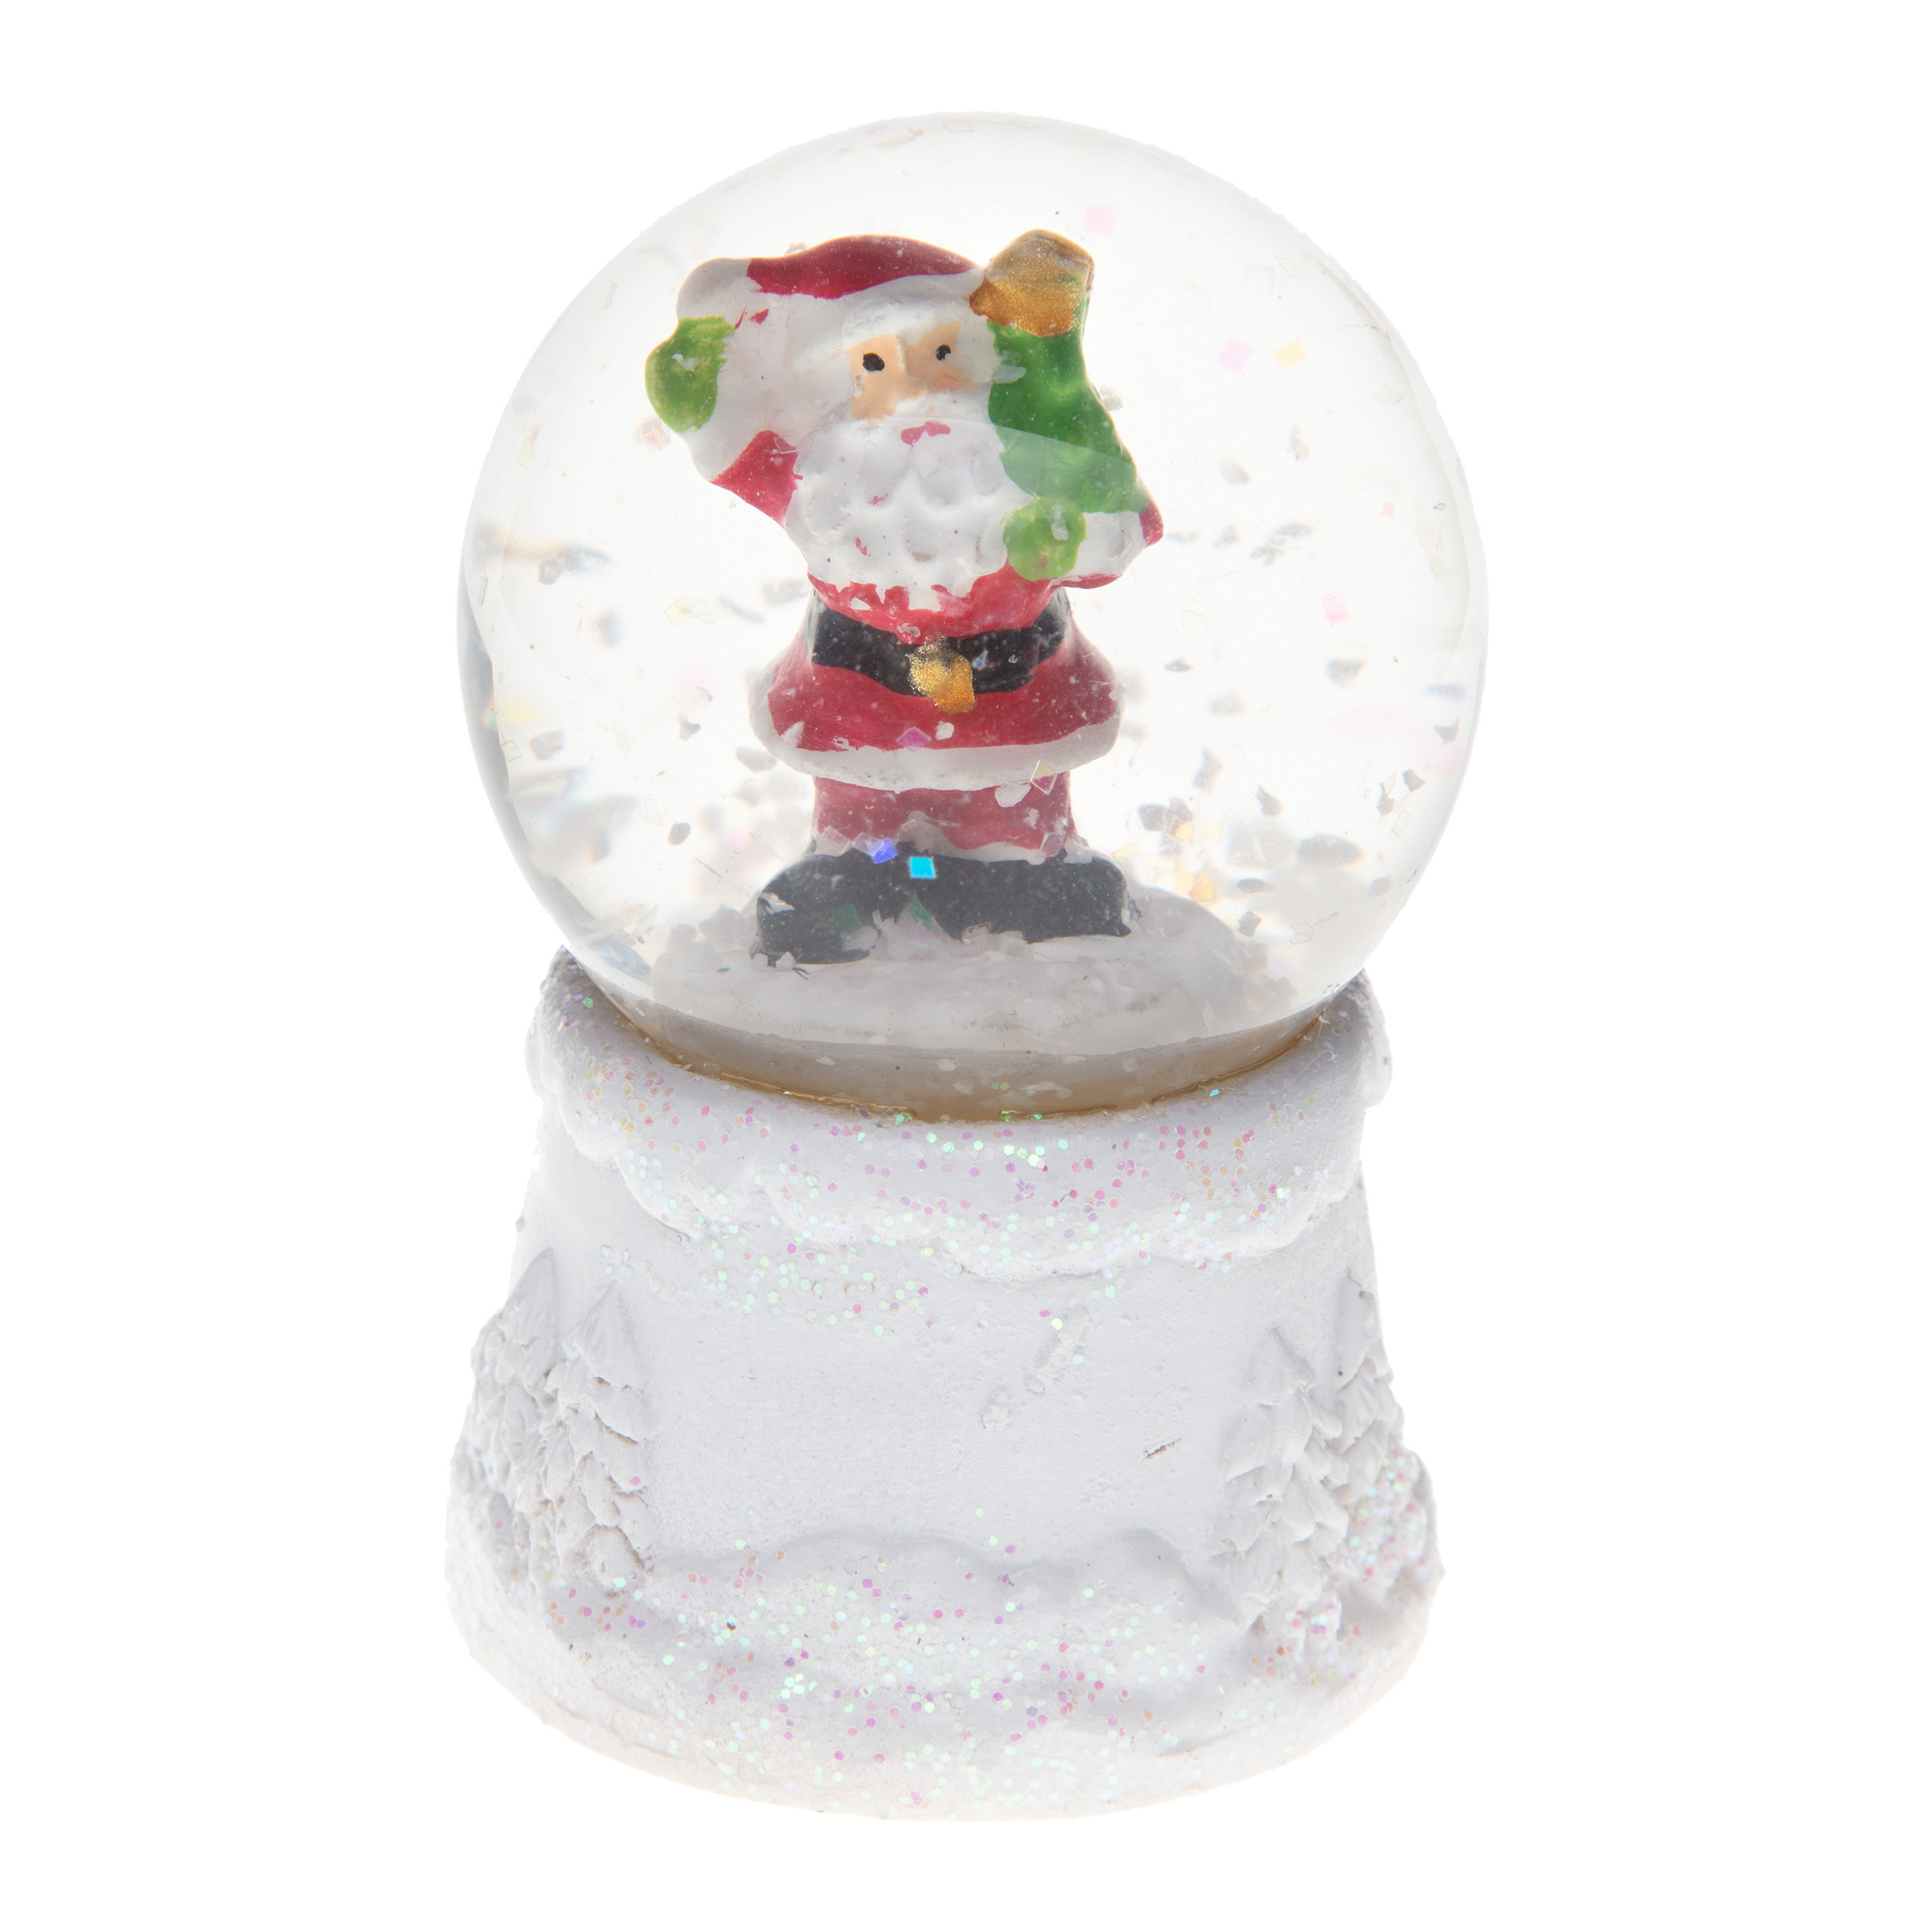 Sneeuwbol-snowglobe mini kerstman met licht 4,5 x 7 cm